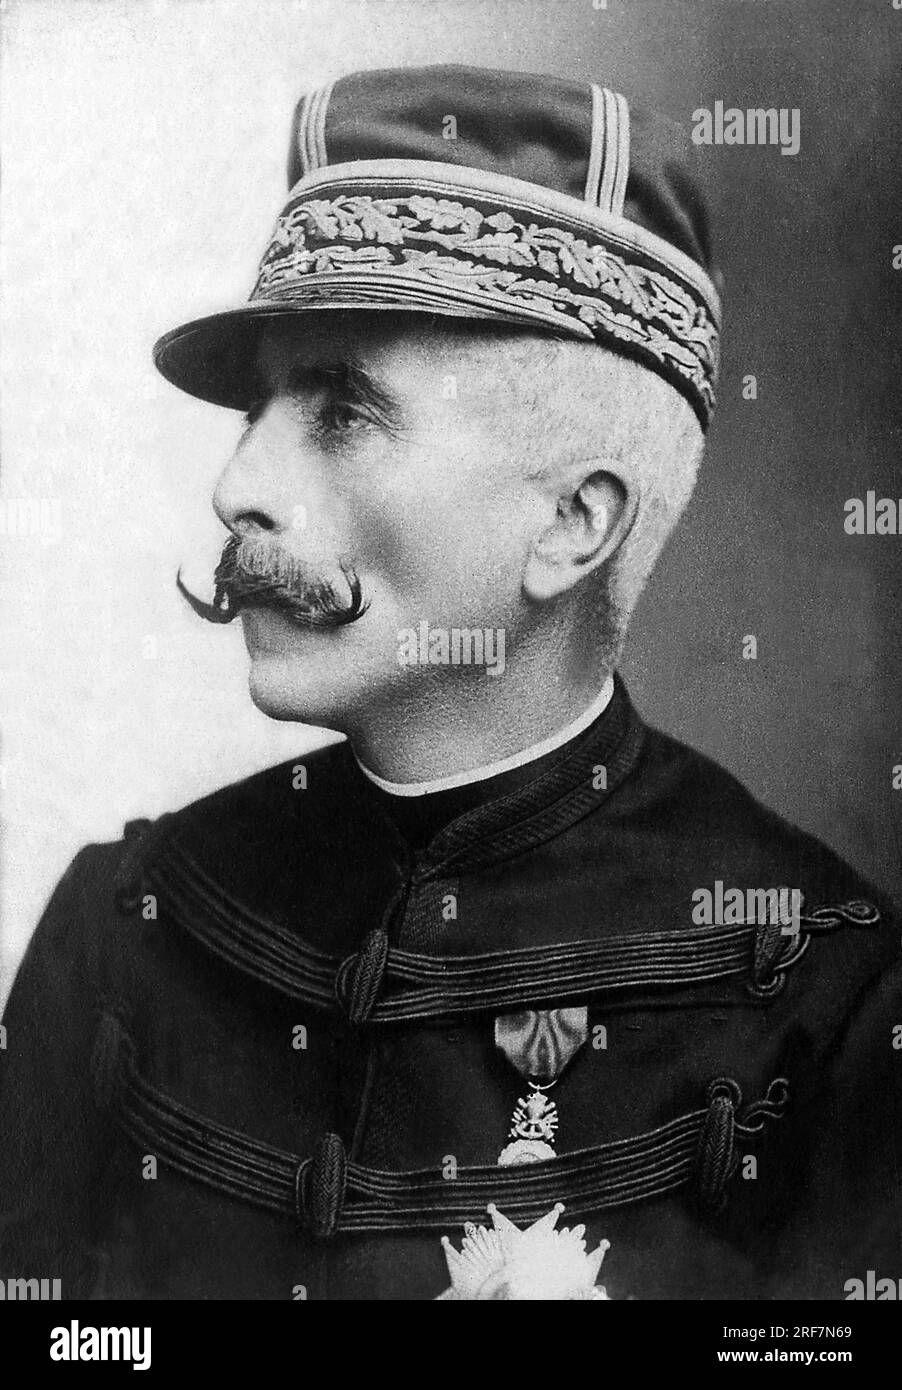 Portrait du marquis Gaston Alexandre Auguste de Galliffet (1830-1909), General de l'Armee Francaise. Stock Photo